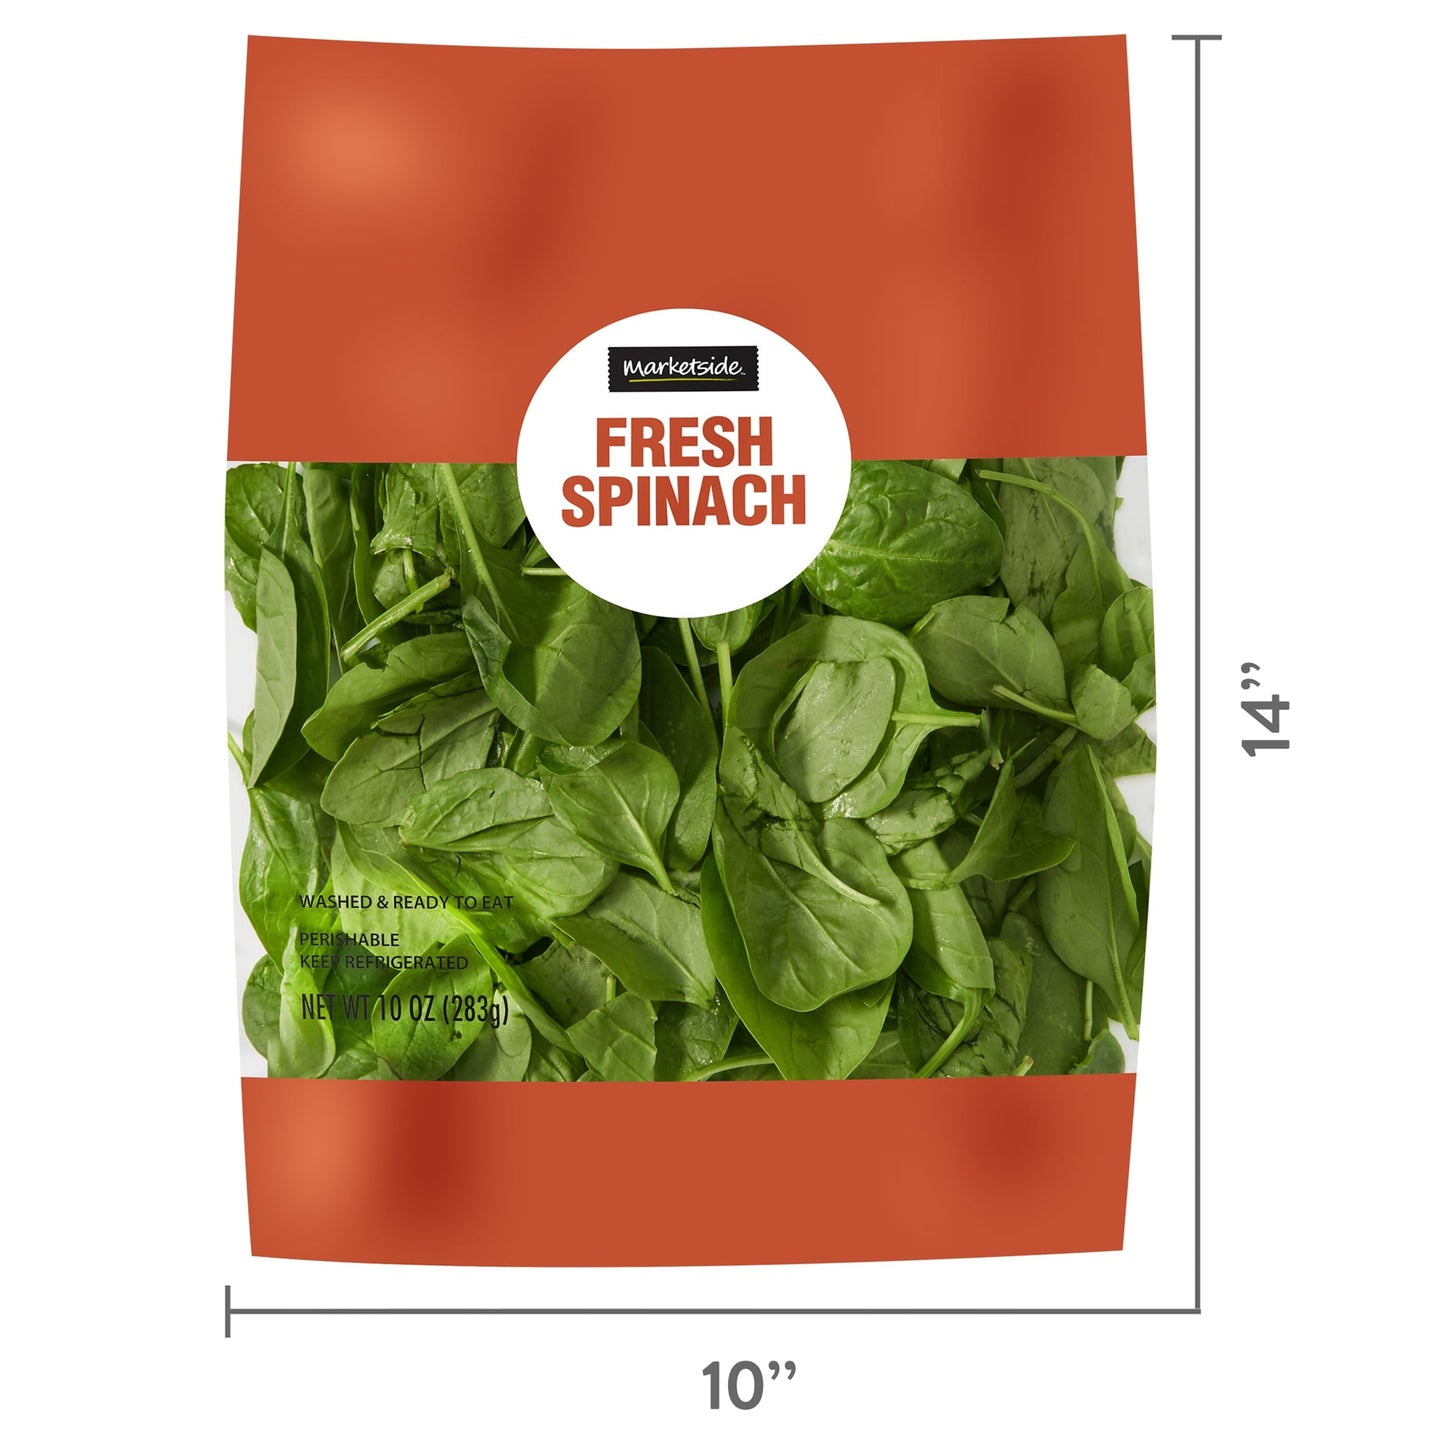 Marketside Fresh Spinach, 10 oz Bag, Fresh